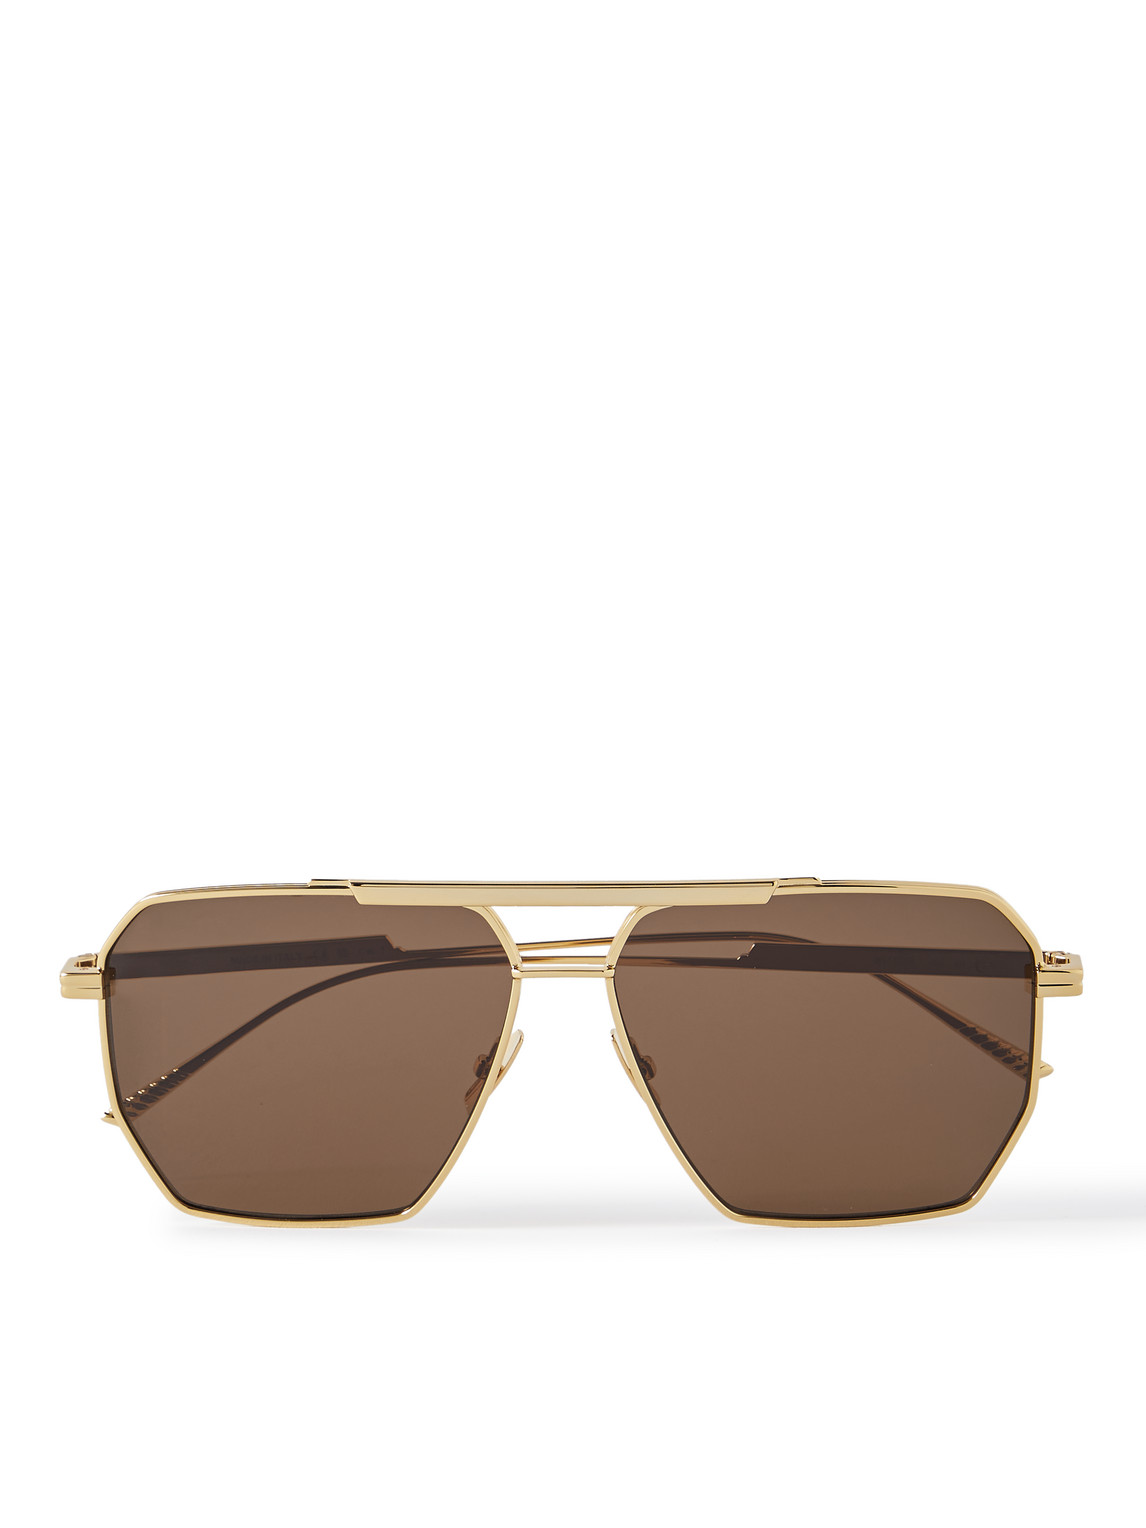 Bottega Veneta - Aviator-Style Gold-Tone Sunglasses - Men - Gold von Bottega Veneta